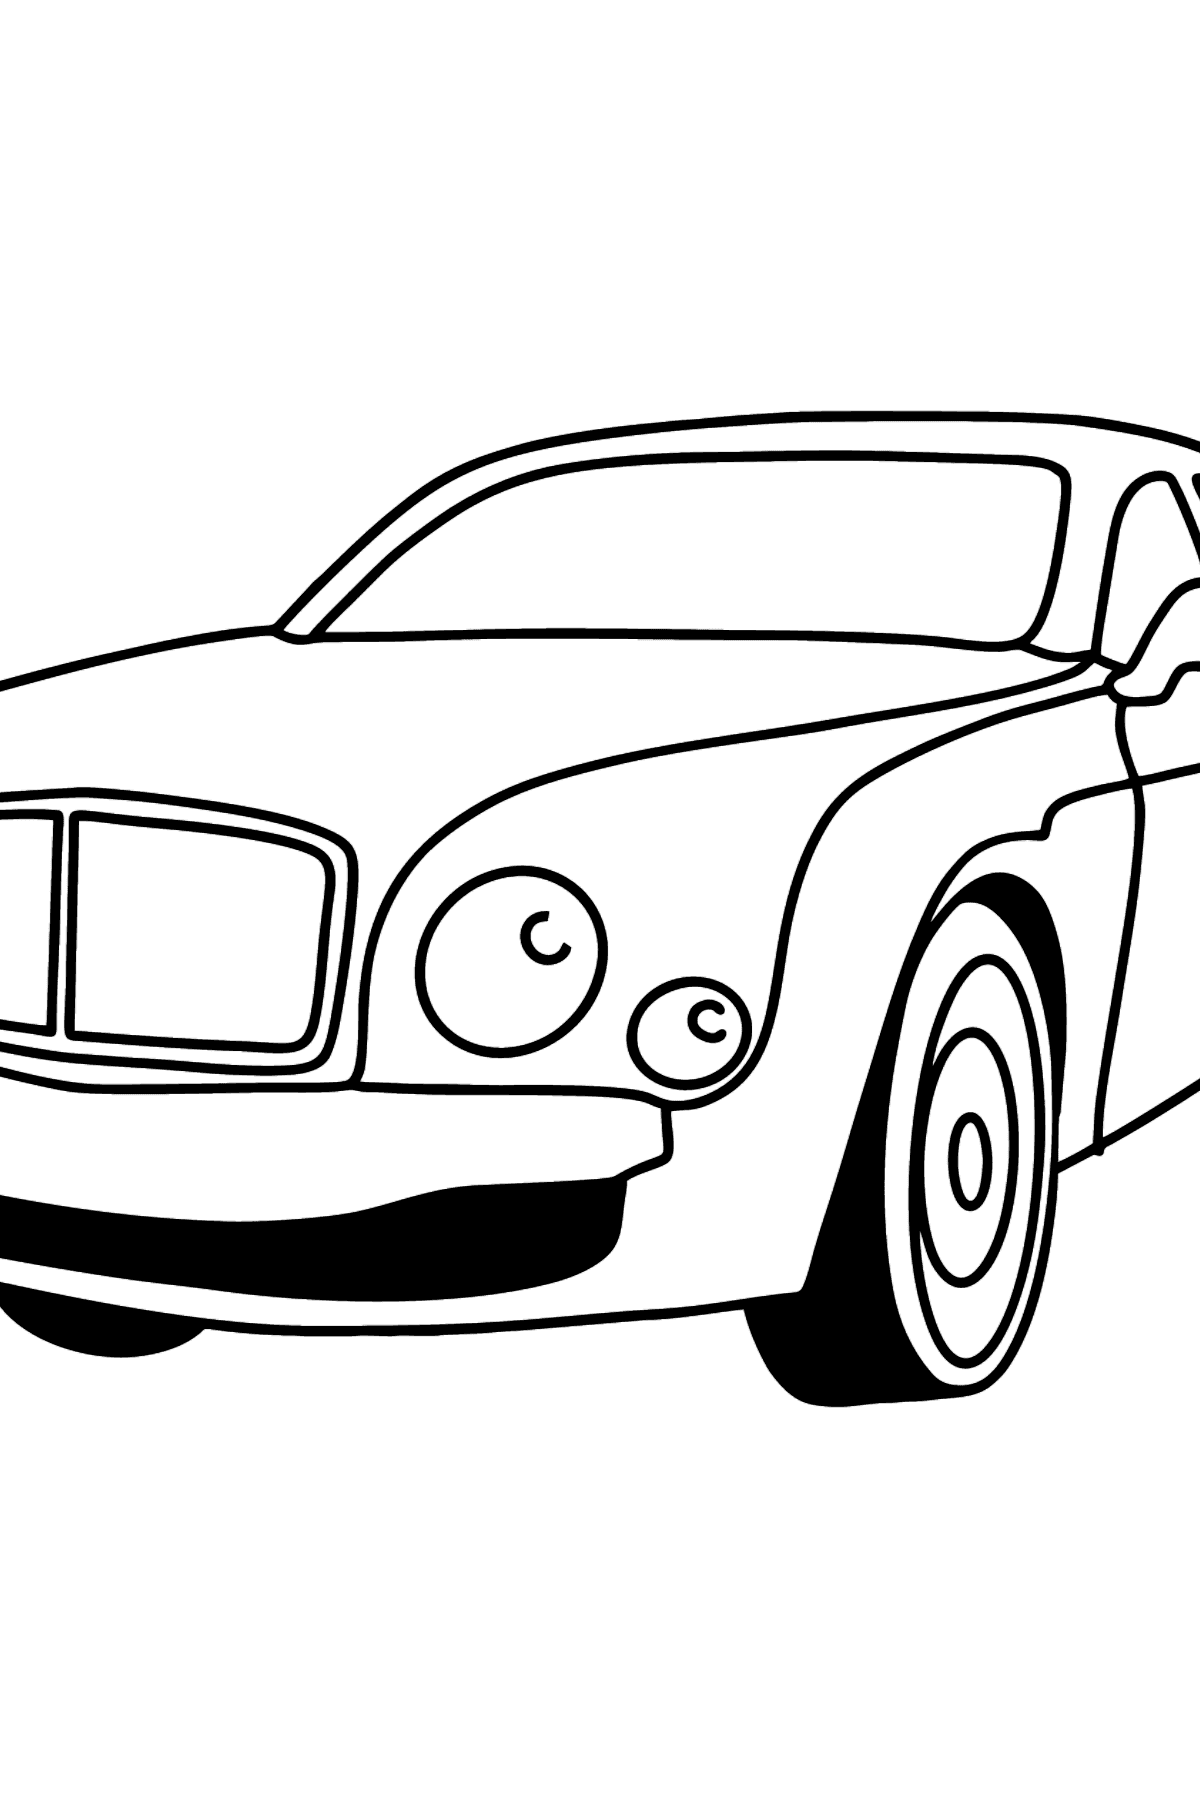 Раскраска Легковой Машины Bentley Mulsanne - Картинки для Детей